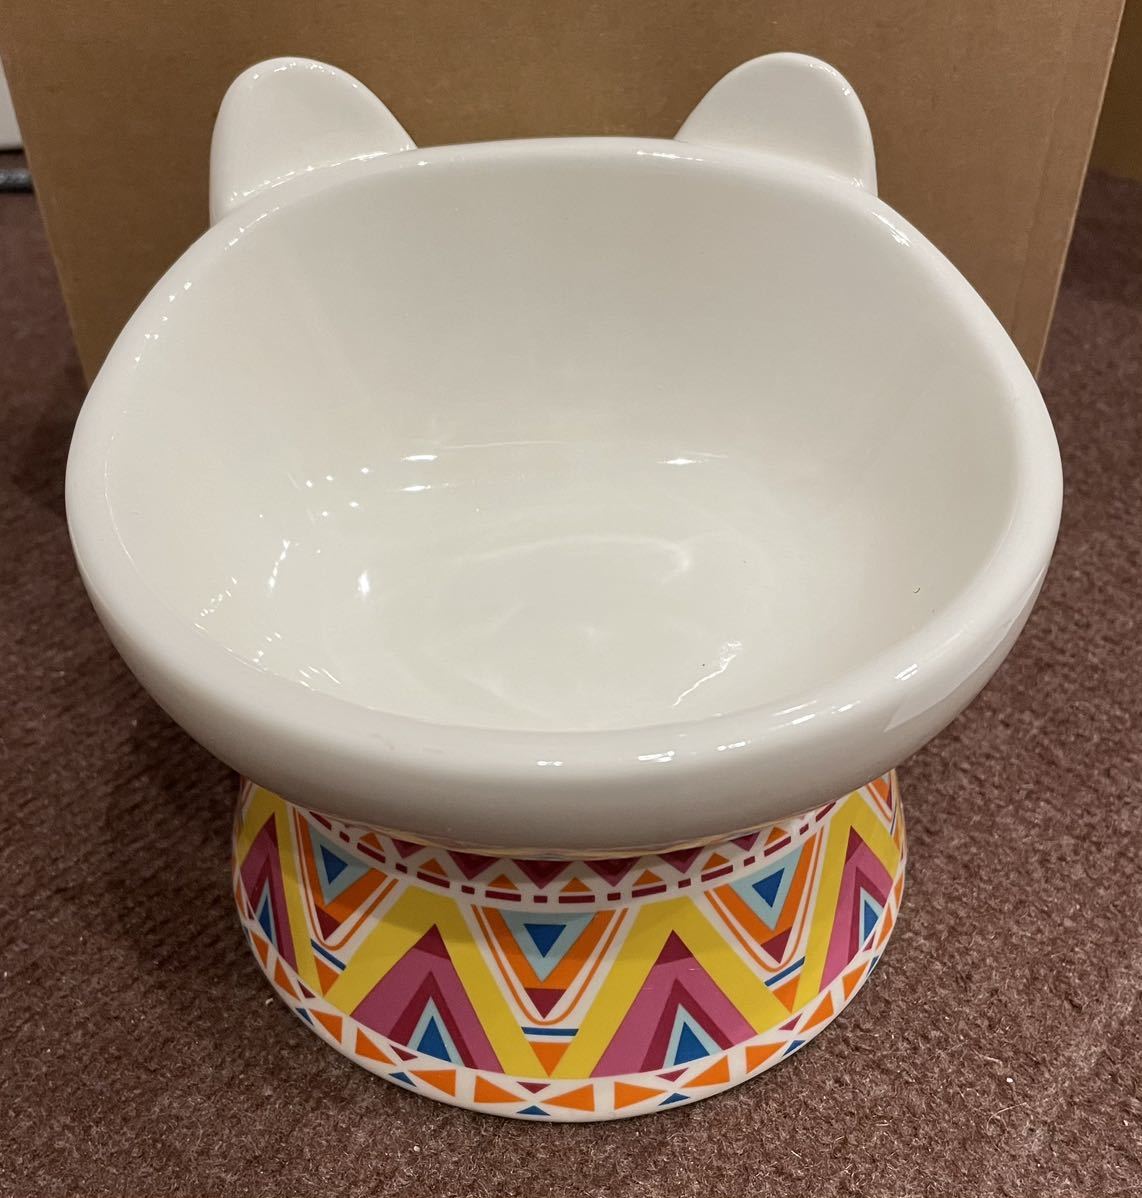  новый товар не использовался бесплатная доставка GUREITOJP керамика капот миска кошка посуда керамика симпатичный наклонение домашнее животное посуда 